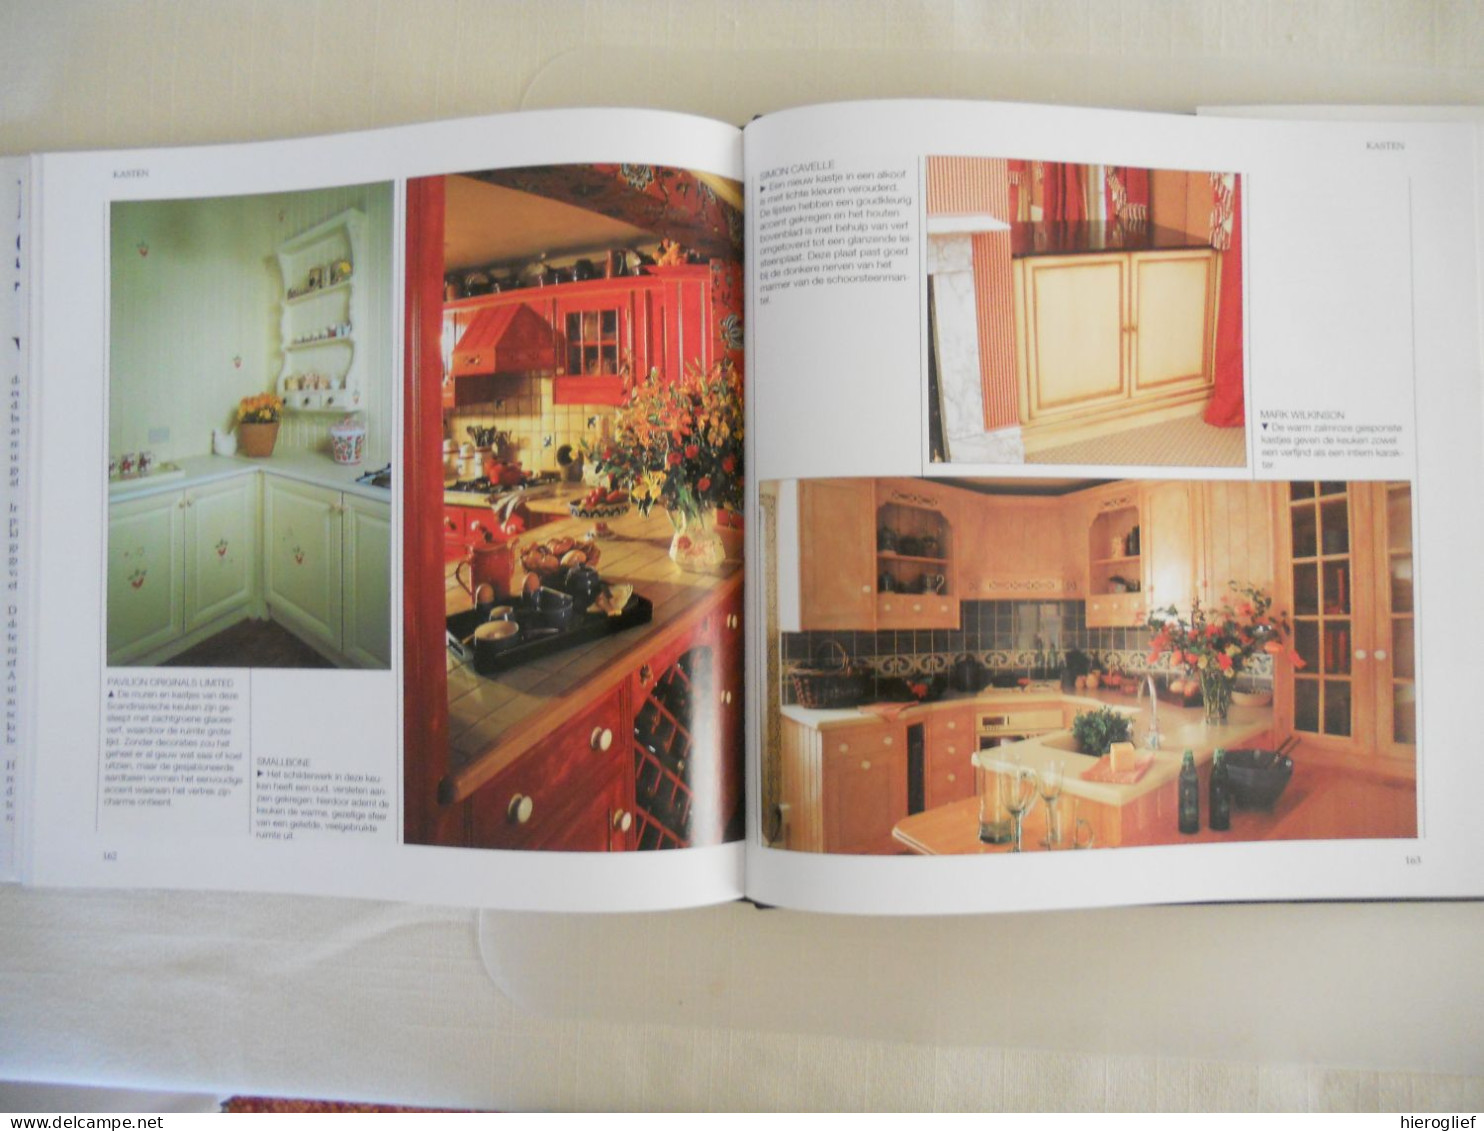 DECORATIEVE SCHILDERTECHNIEKEN door Simon Cavelle instructies schilderen decoratie toepassingen  1994 librero